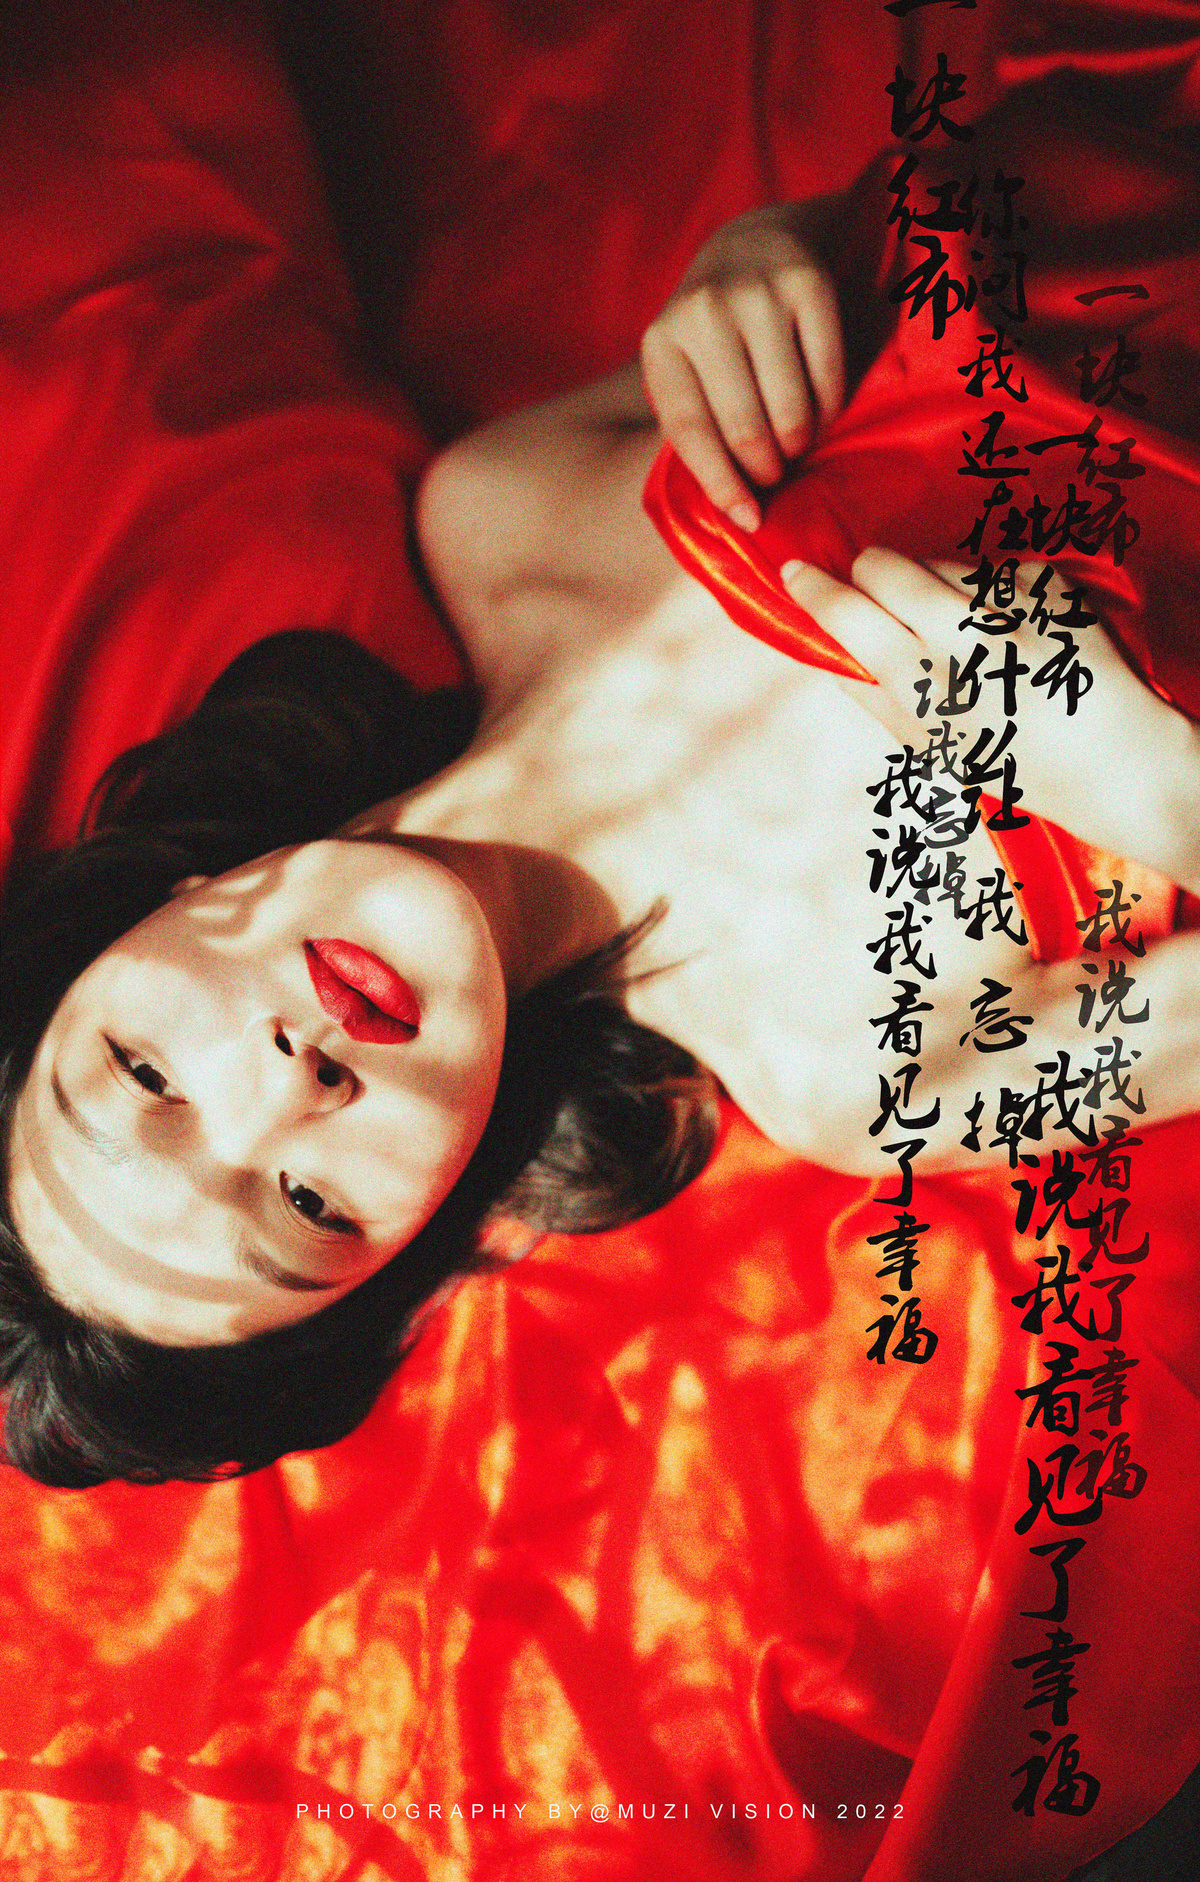 一个穿着红色连衣裙的女人躺在床上